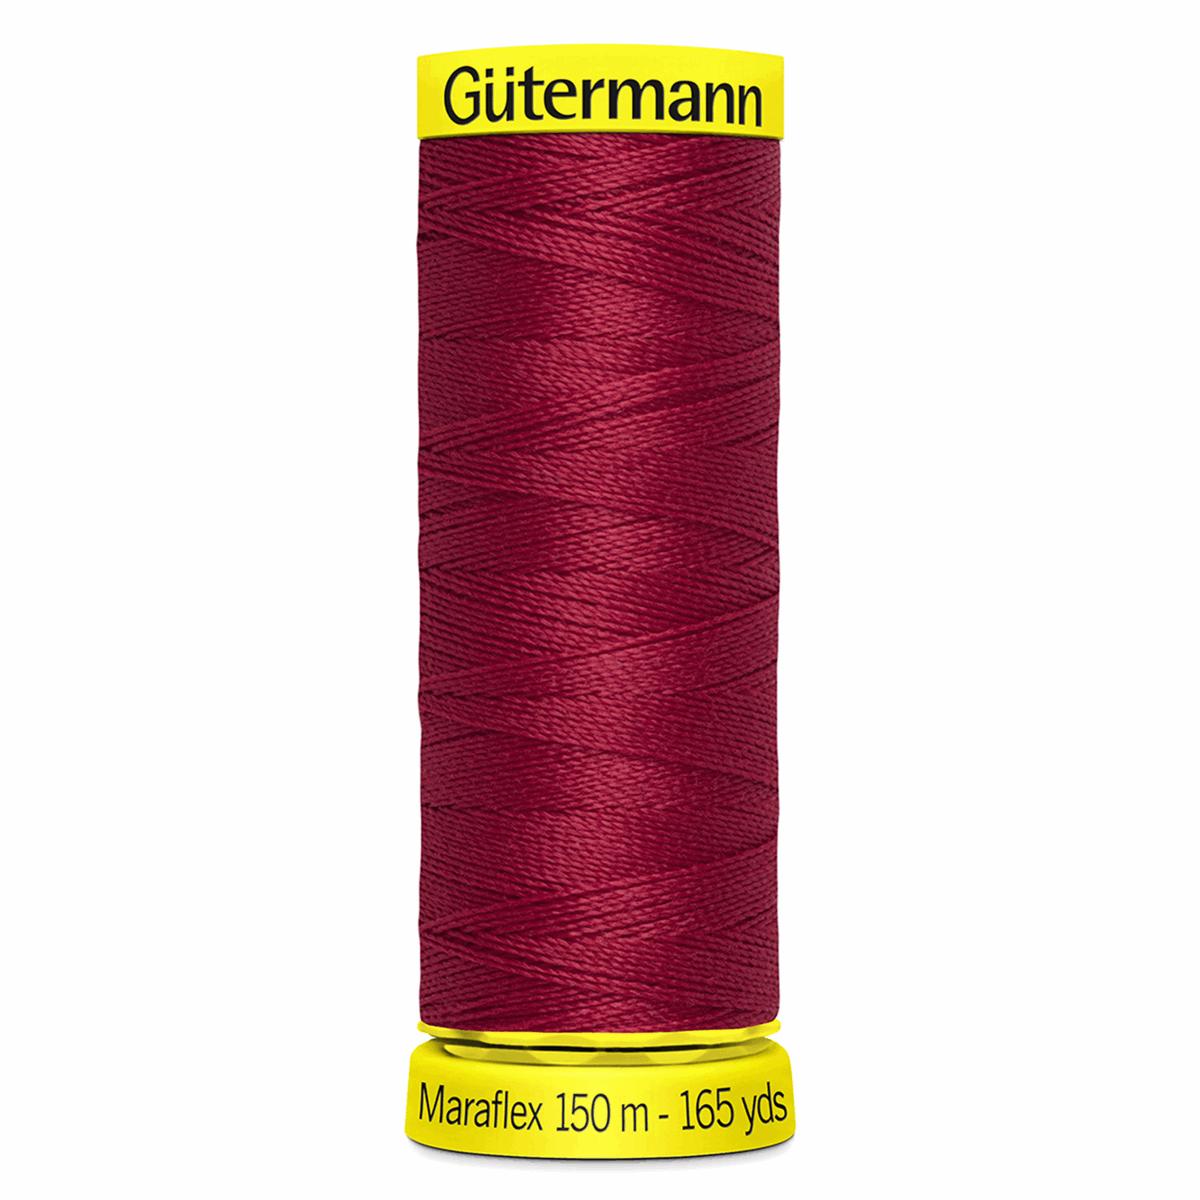 Gutermann Maraflex Elastic Sewing Thread 150m Garnet 46